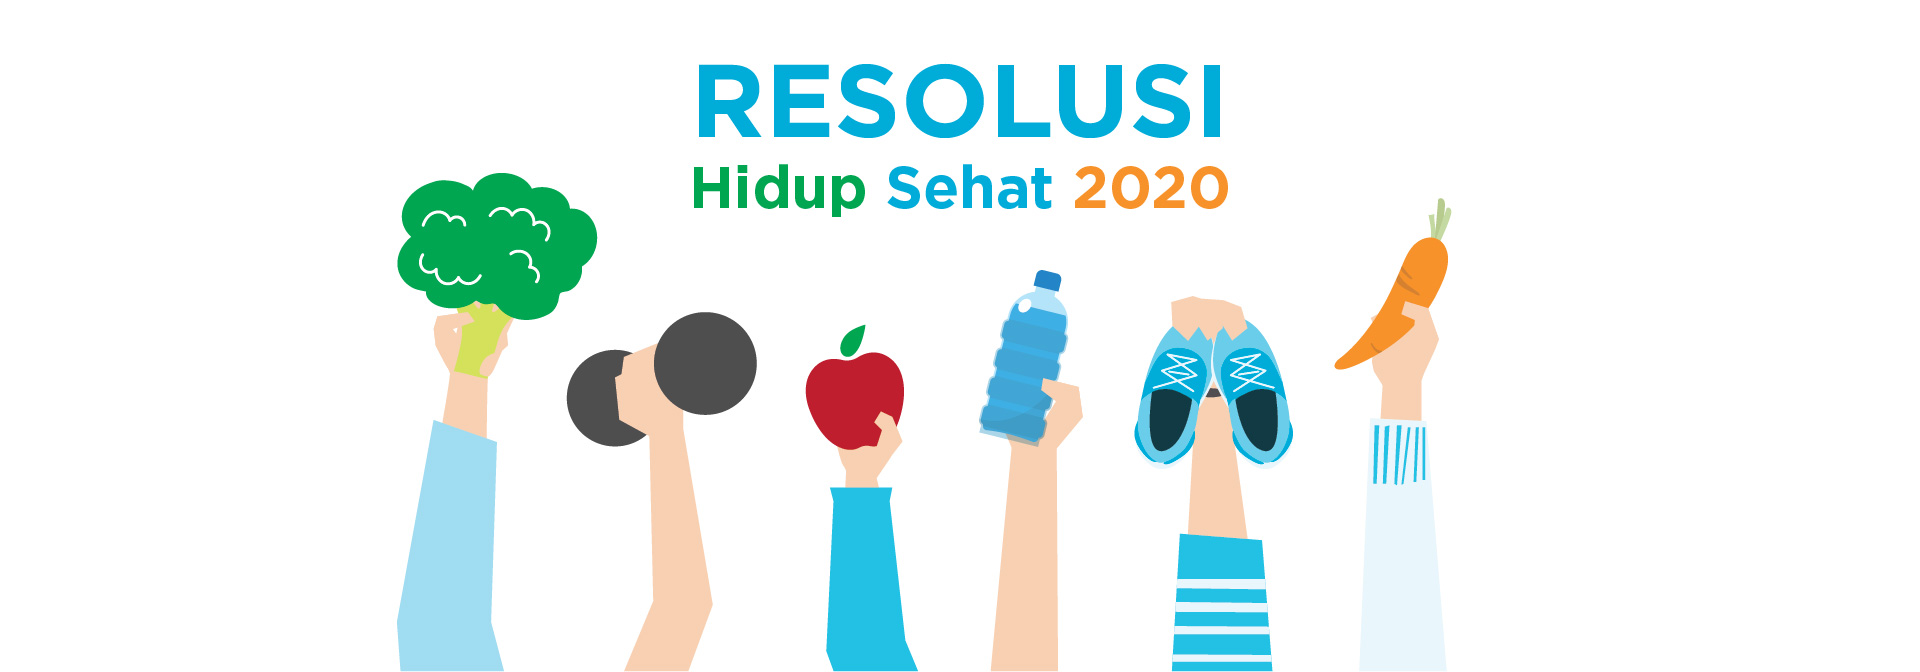 Resolusi Hidup Sehat 2020